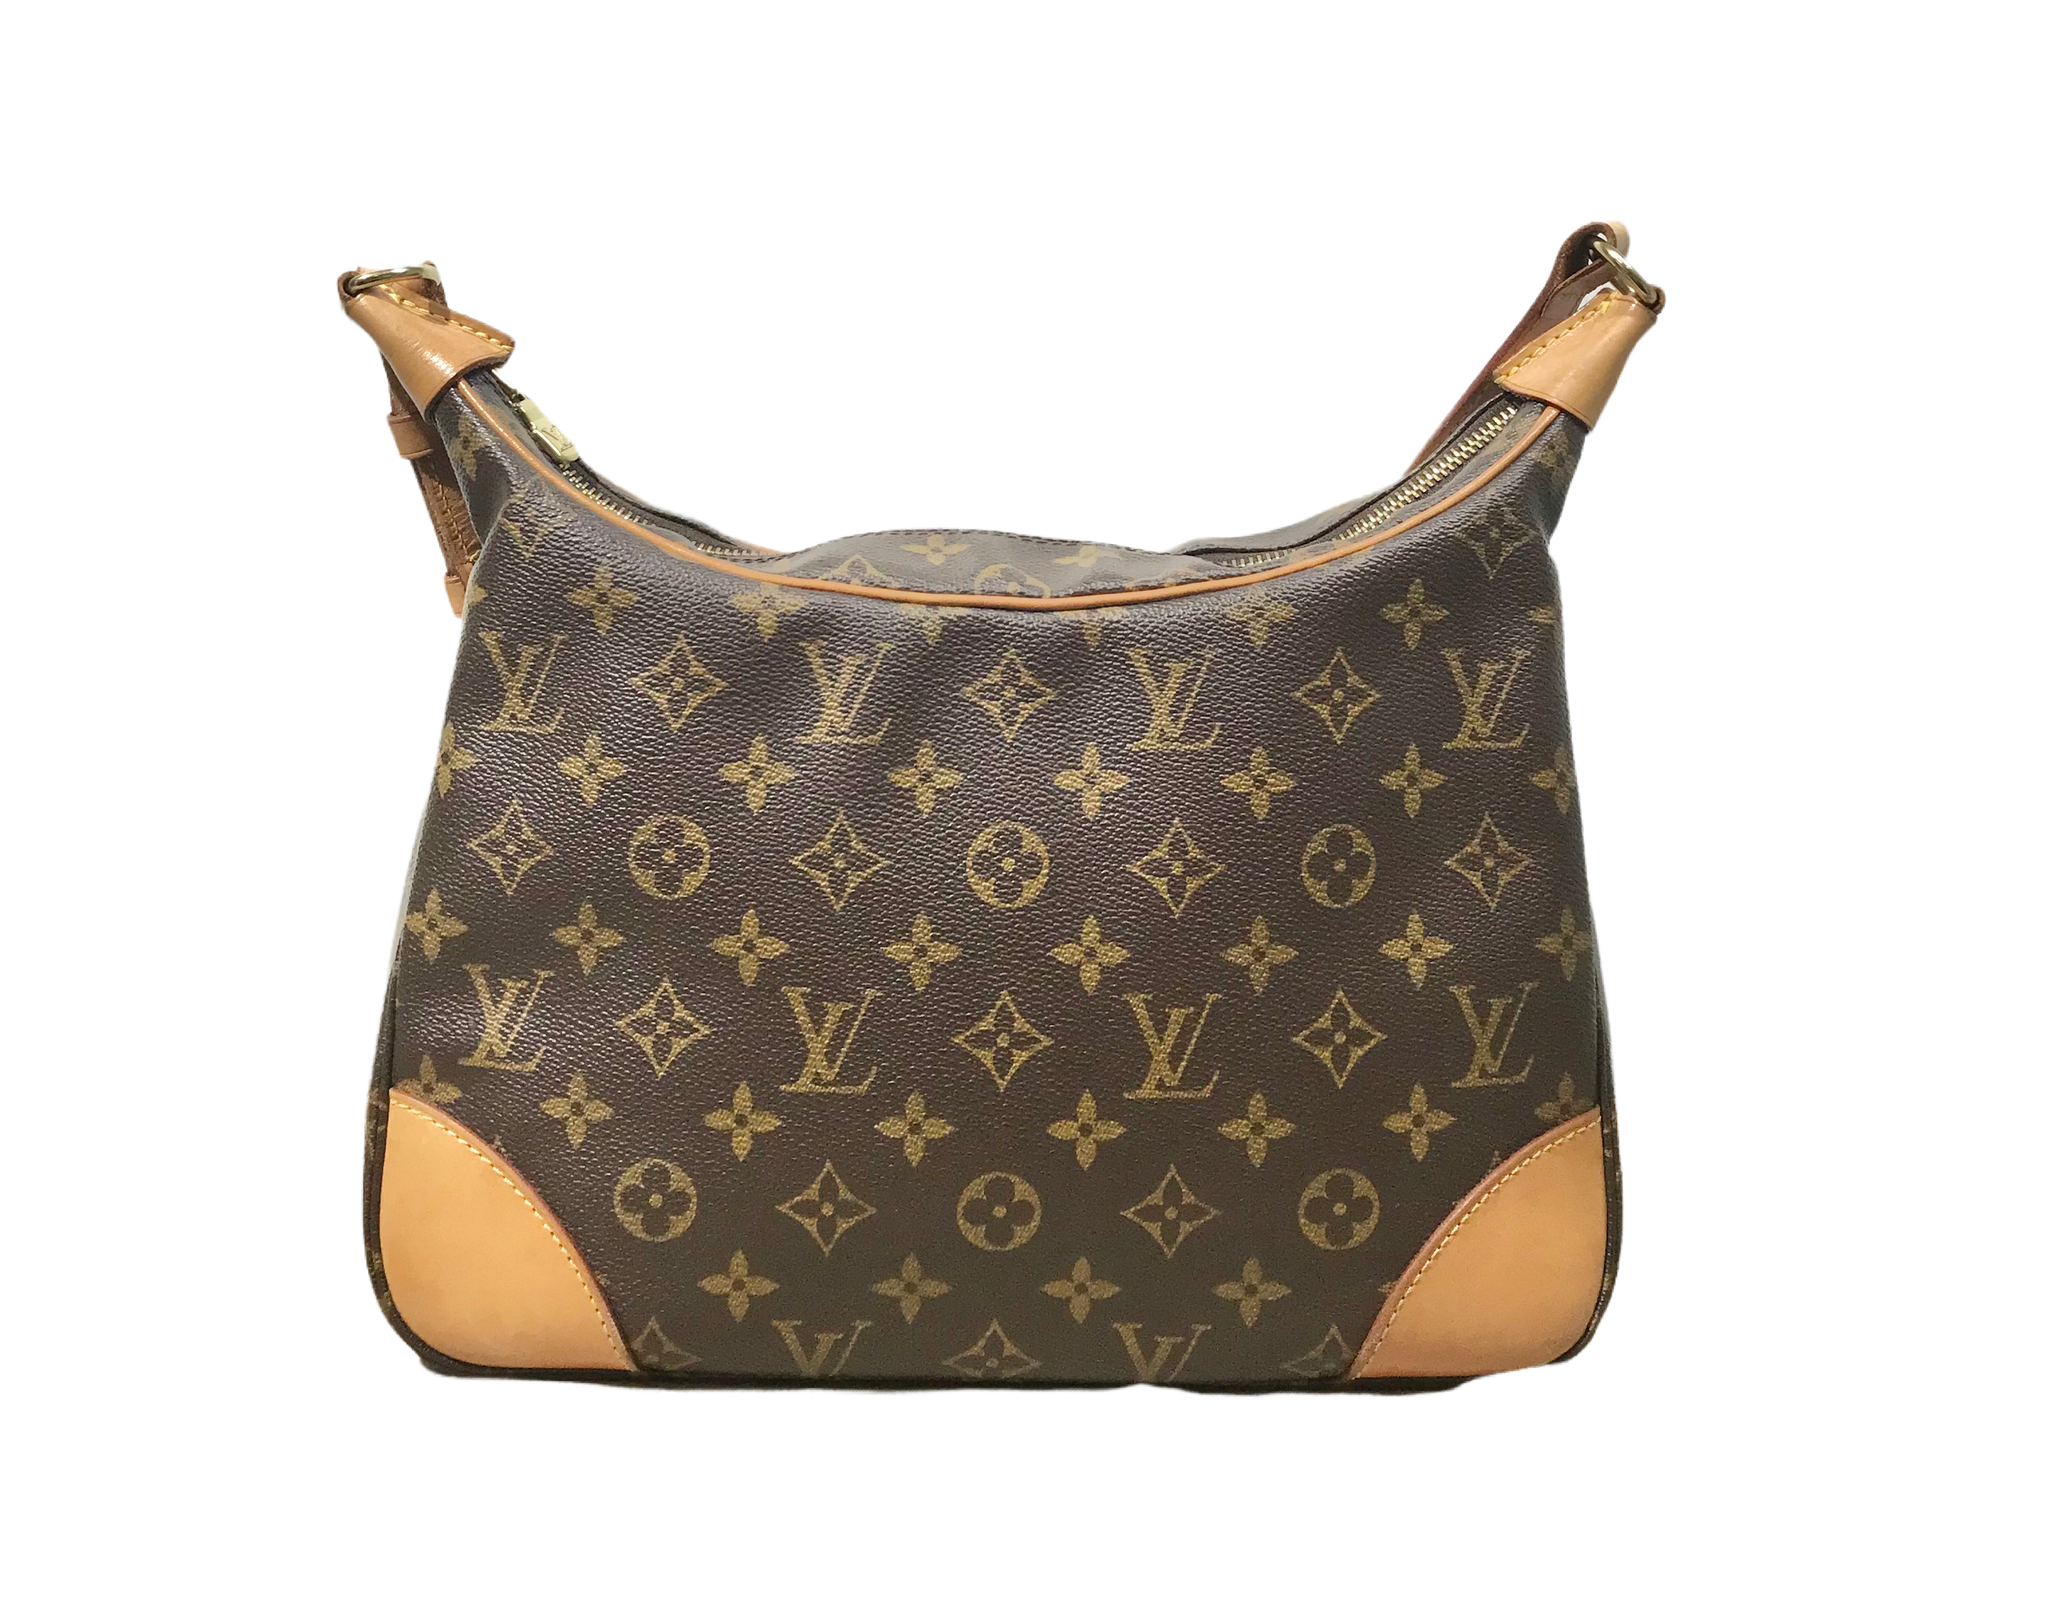 Second Hand Louis Vuitton Boulogne Bags